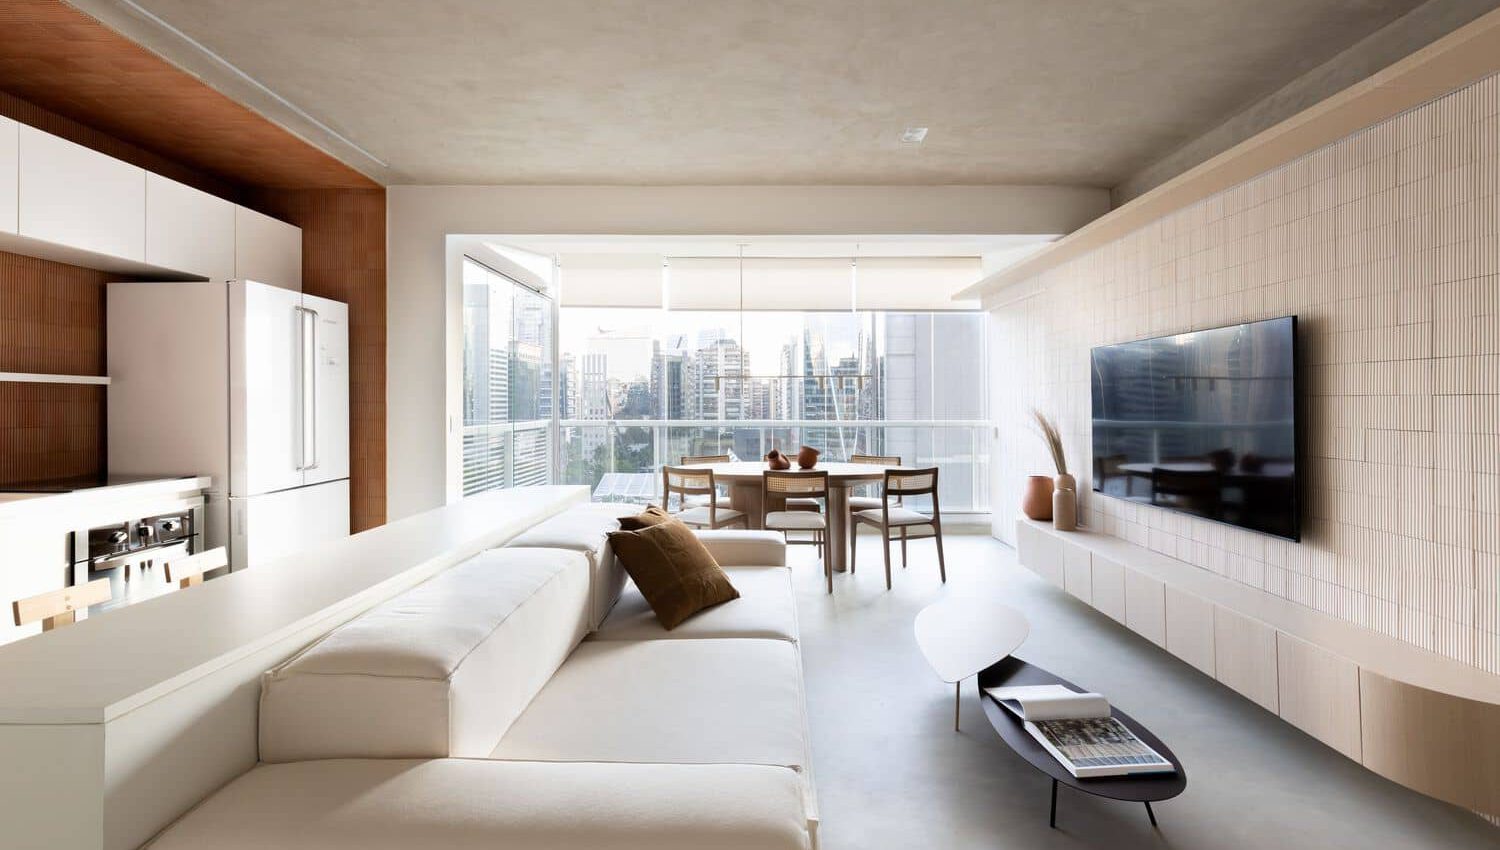 طراحی آپارتمان مدرن با رنگ های روشن - تحریریه آس دیزاین